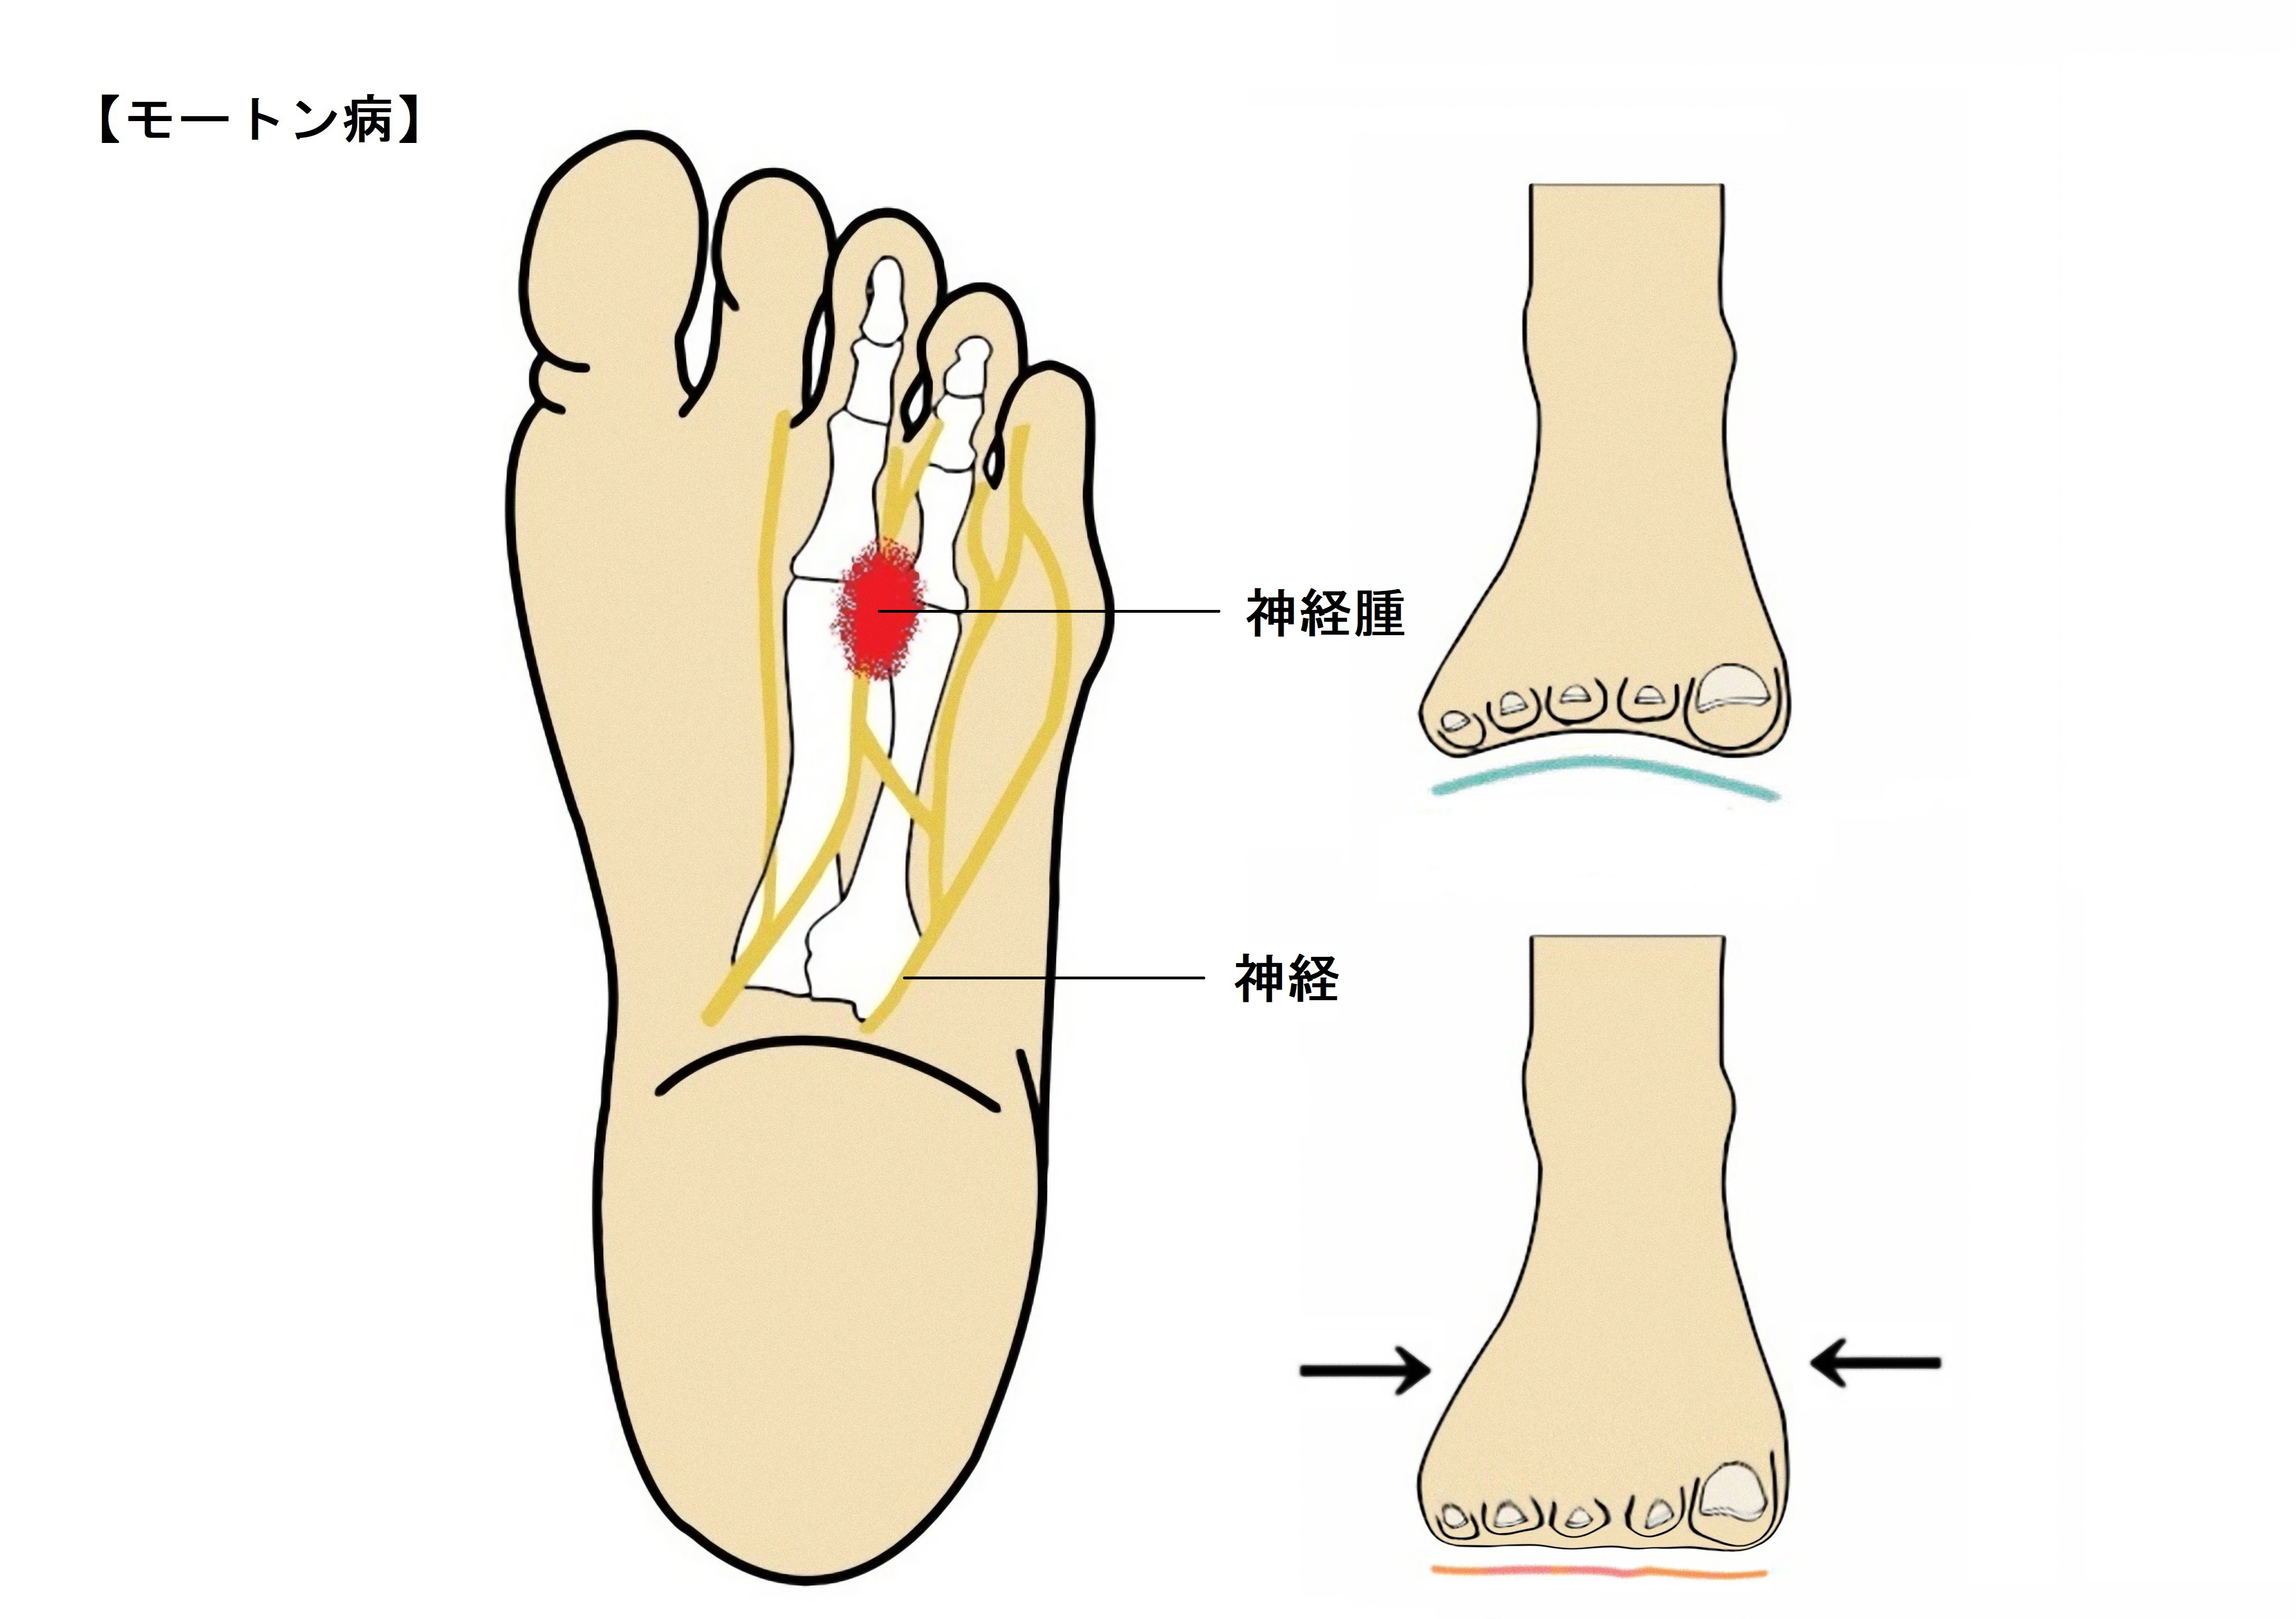 歩くと足の中指と薬指辺りがピリピリ痛い シビレが続く どうすればいいの 外反母趾